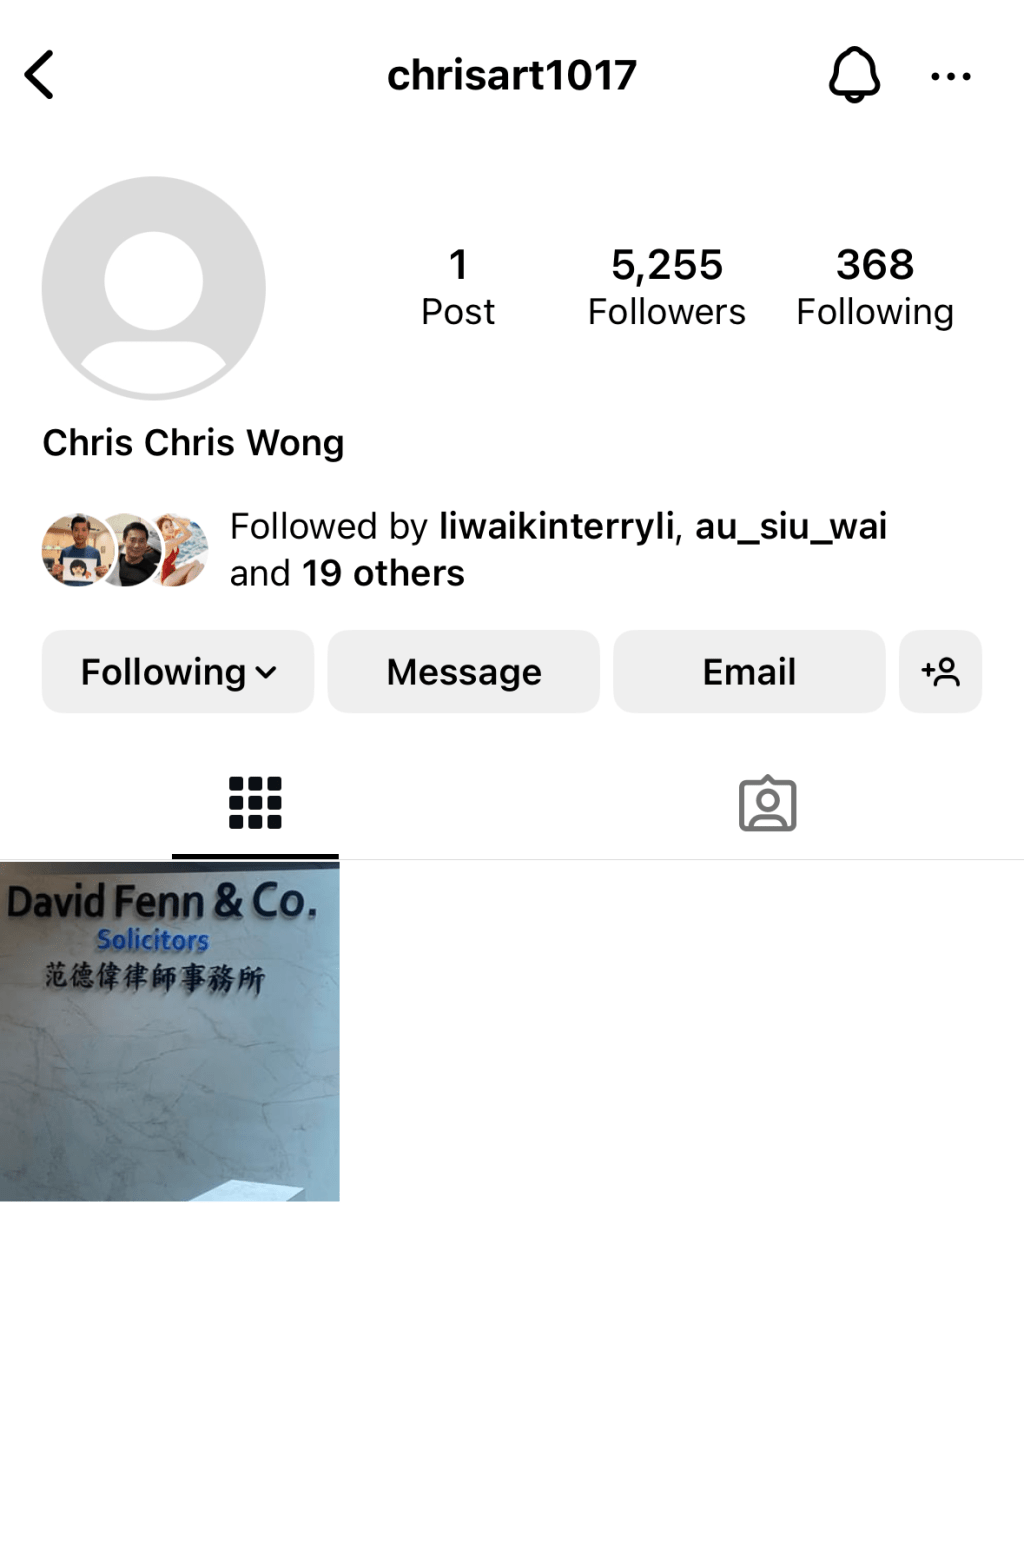 Chris的IG在本月2日，除书法及画作被删外，连profile pic亦消失不见。